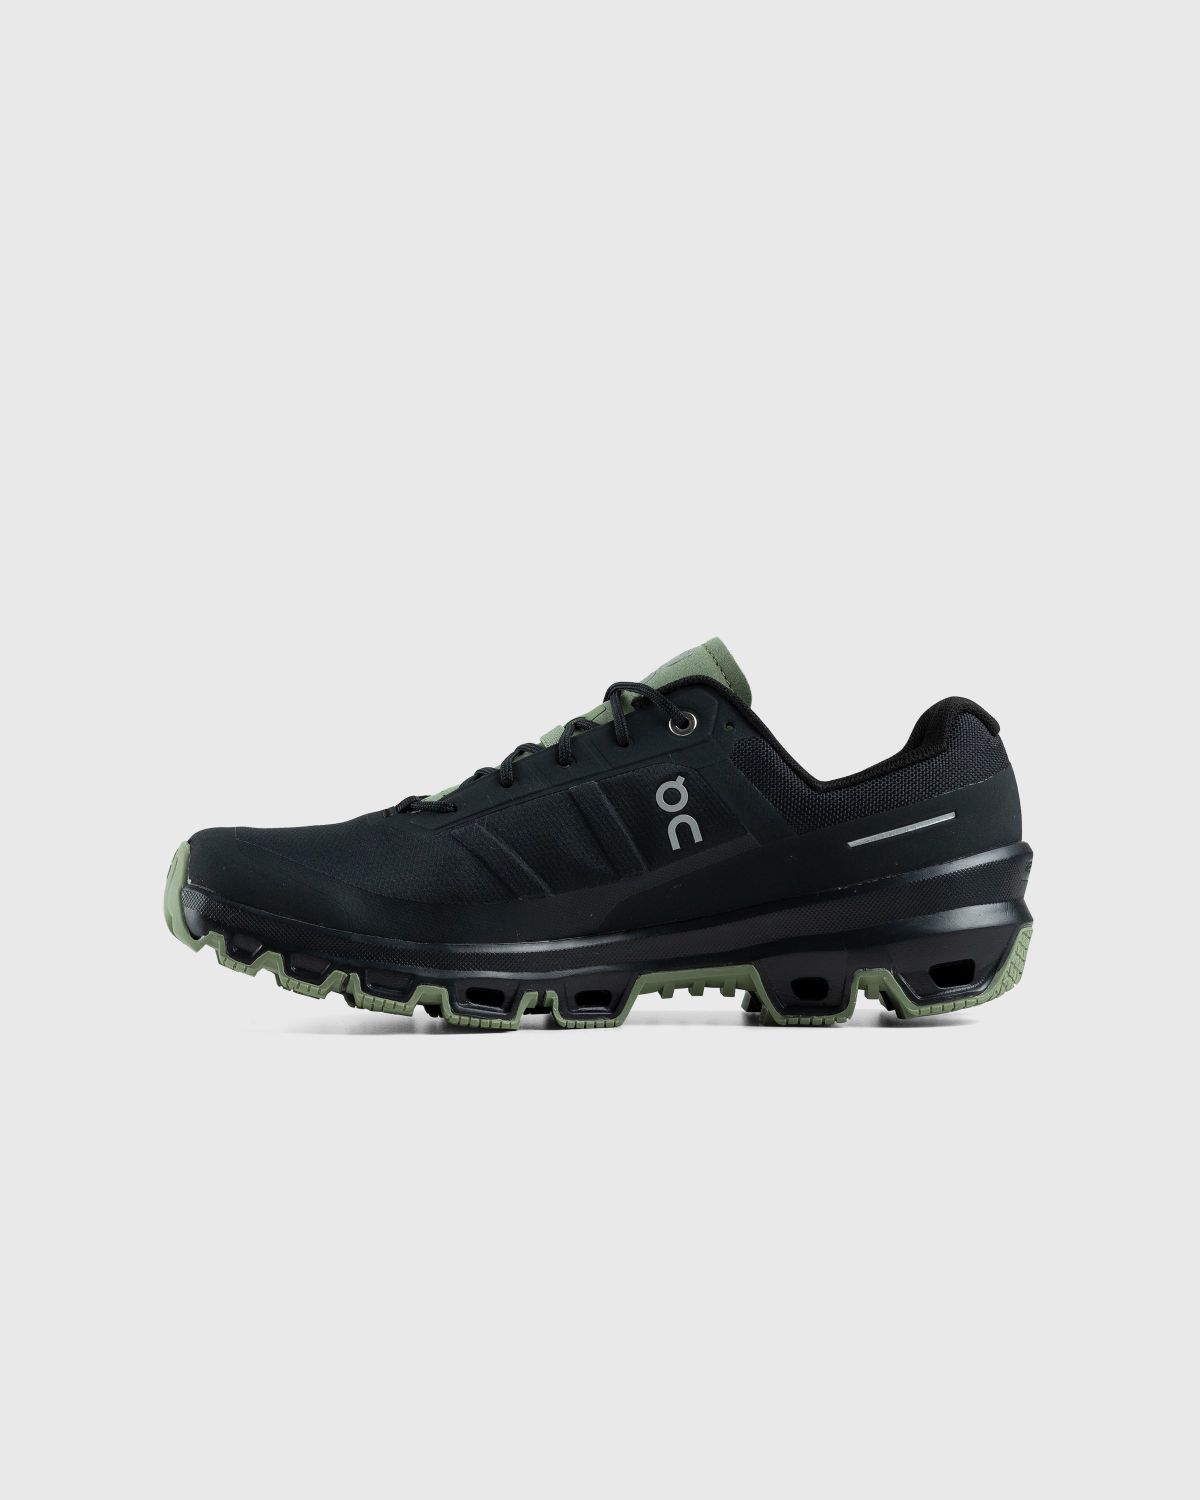 On – Cloudventure Black/Reseda - Low Top Sneakers - Black - Image 2